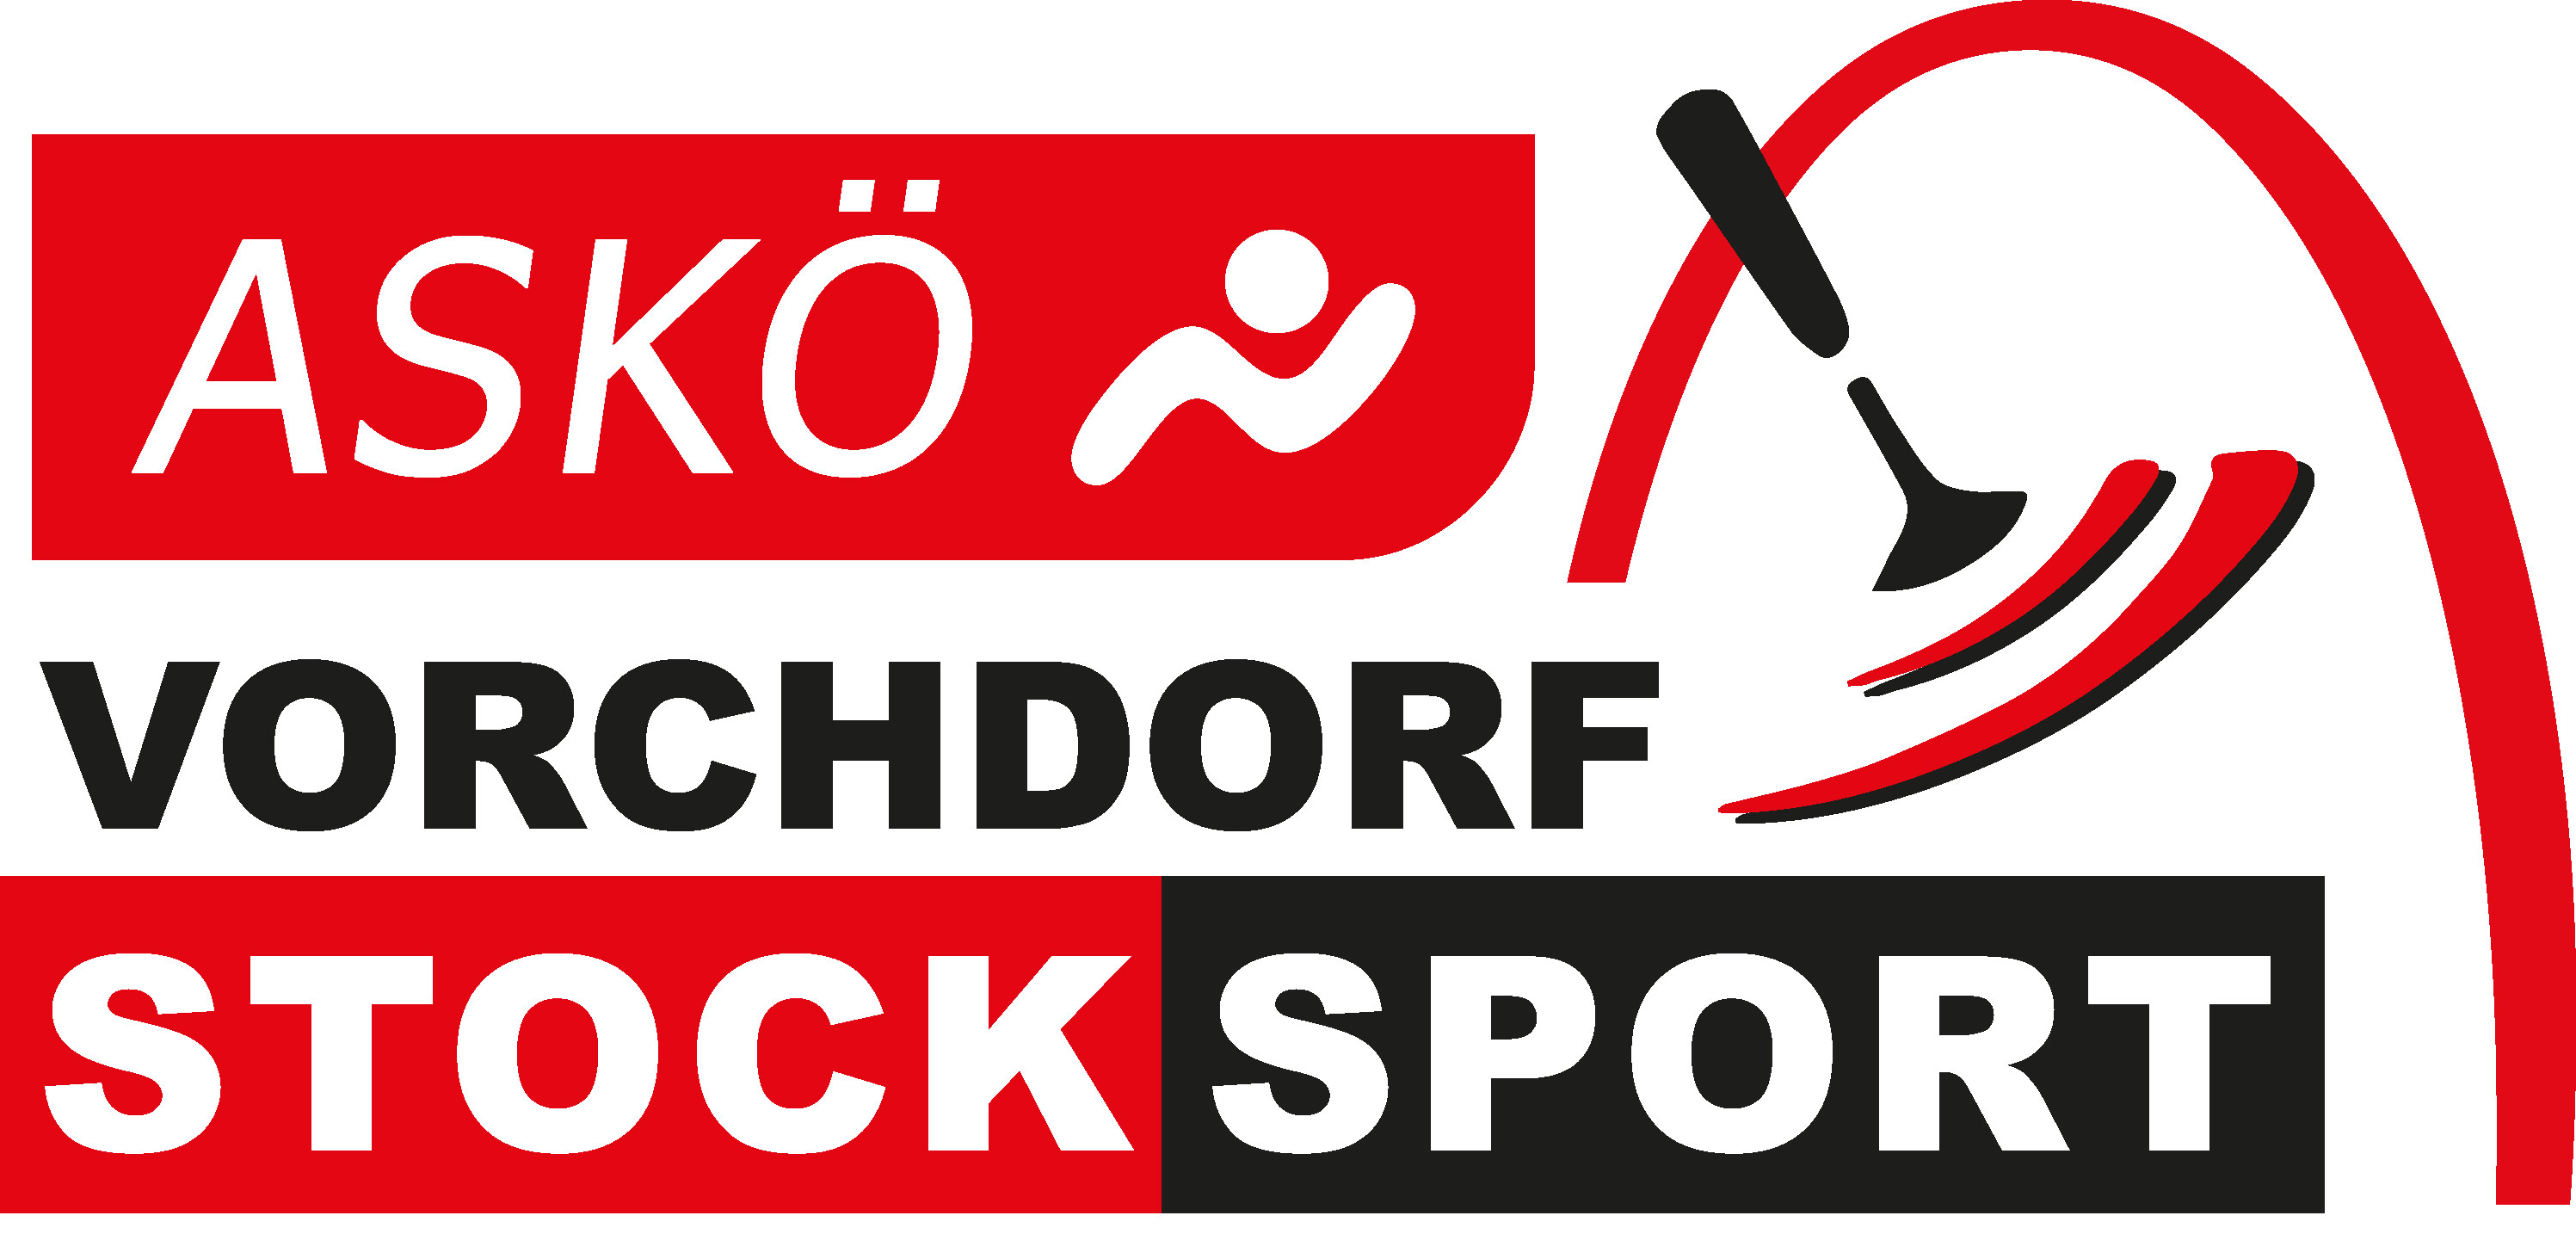 ASKÖ Vorchdorf Stocksport